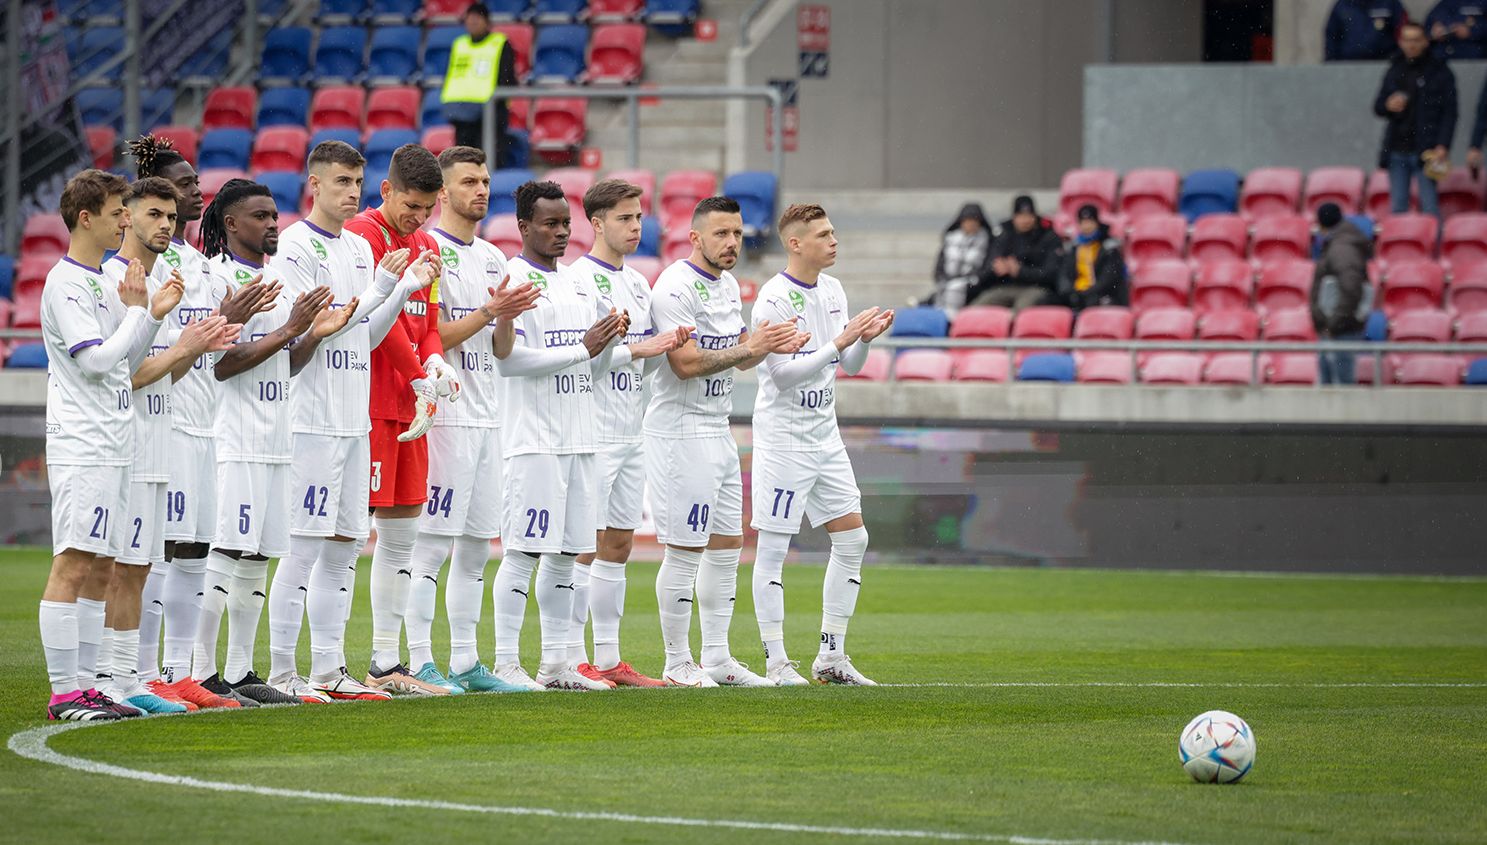 Újpest: Három játékos távozását is bejelentették – hivatalos